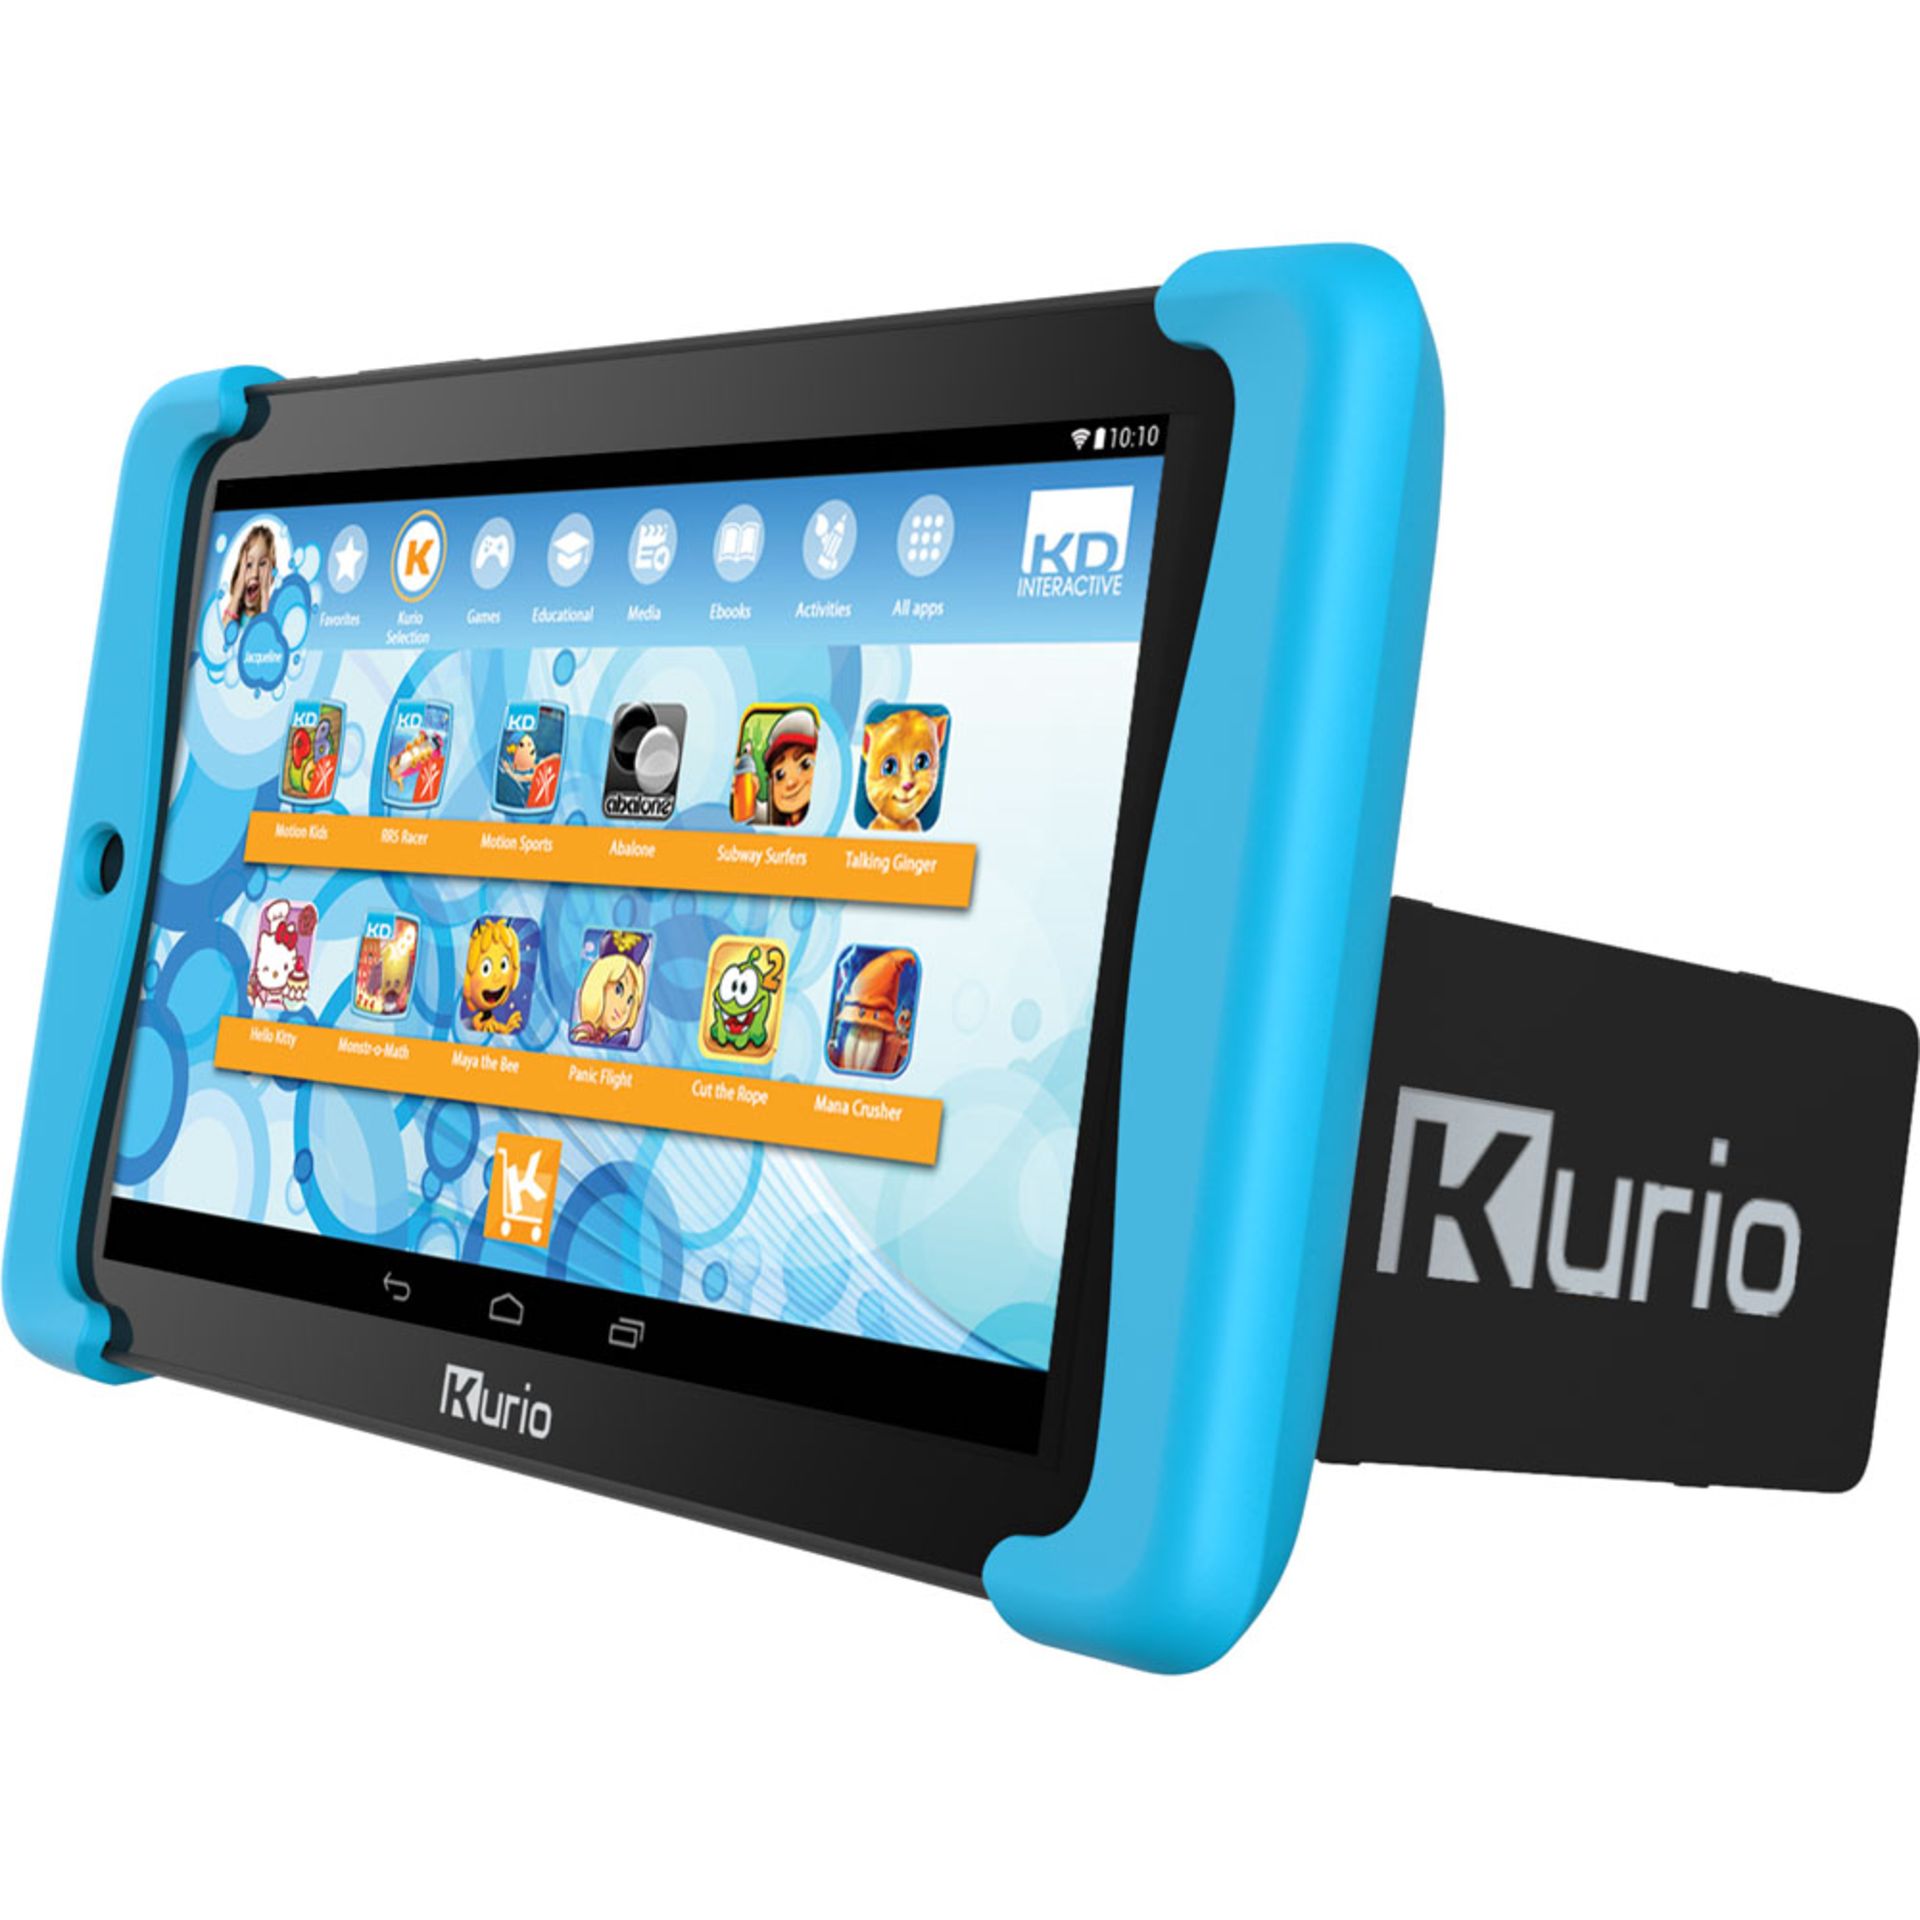 V *TRADE QTY* Grade B Kurio Tab 2 7" Android Tablet - 8GB Storage - Android 5.0 - Quad Core